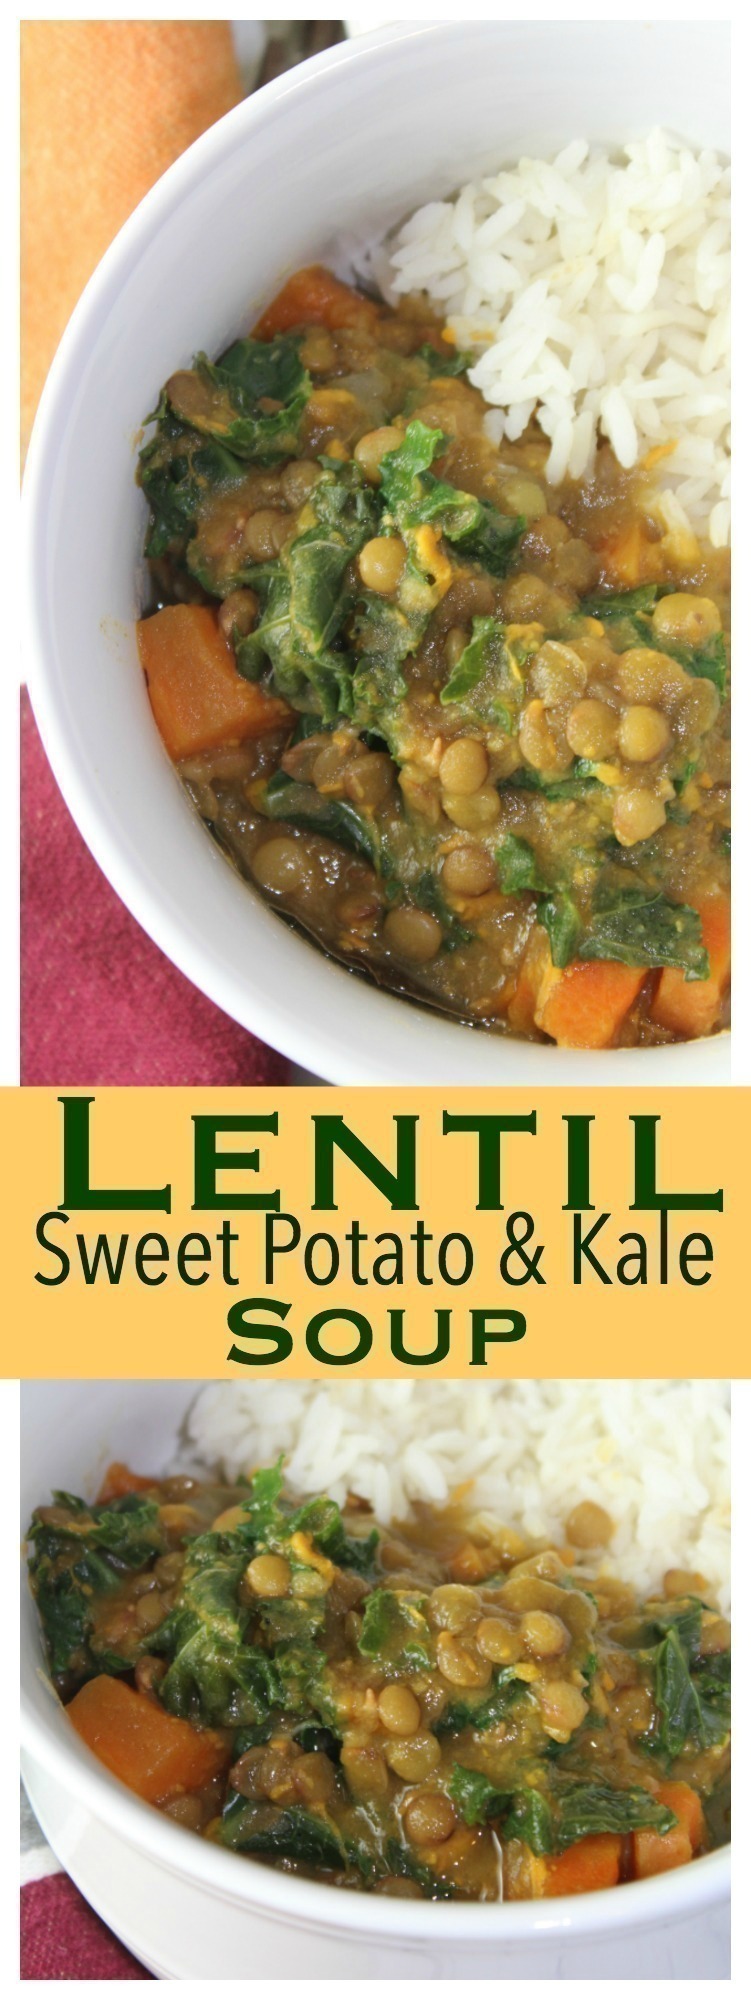 Lentil, Sweet Potato & Kale Soup